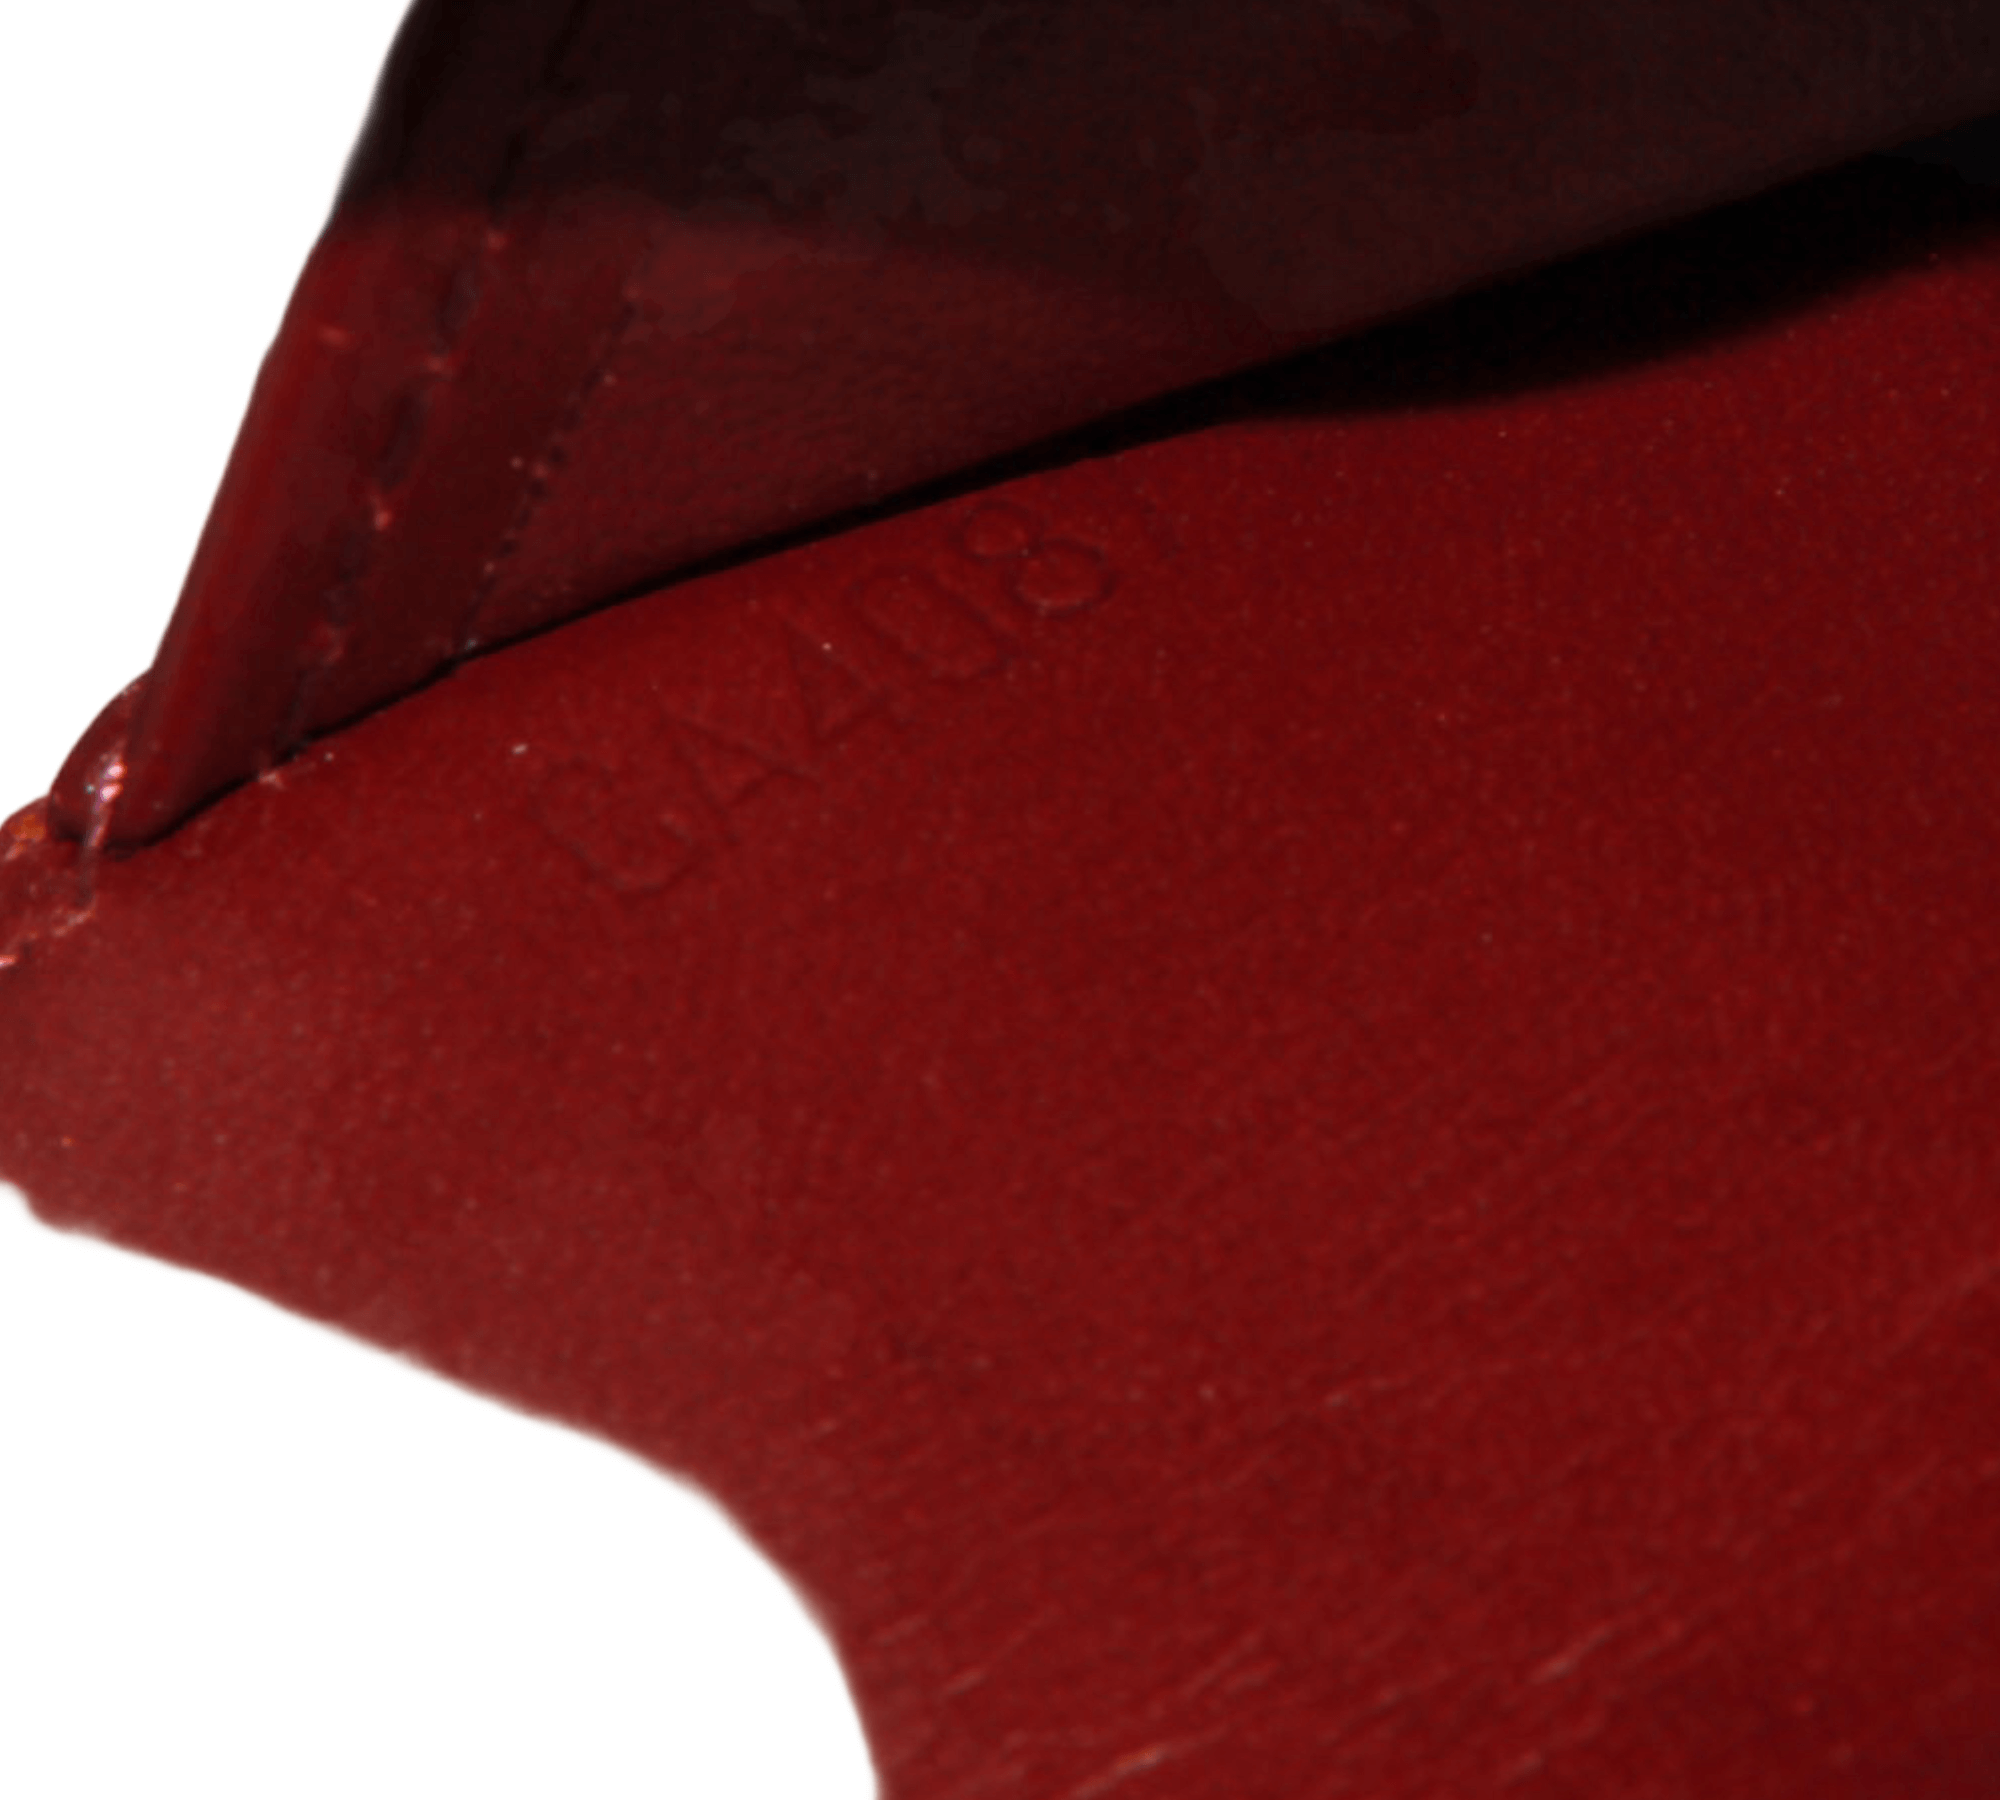 Louis Vuitton agenda in purple monogram patent leather ref.454621